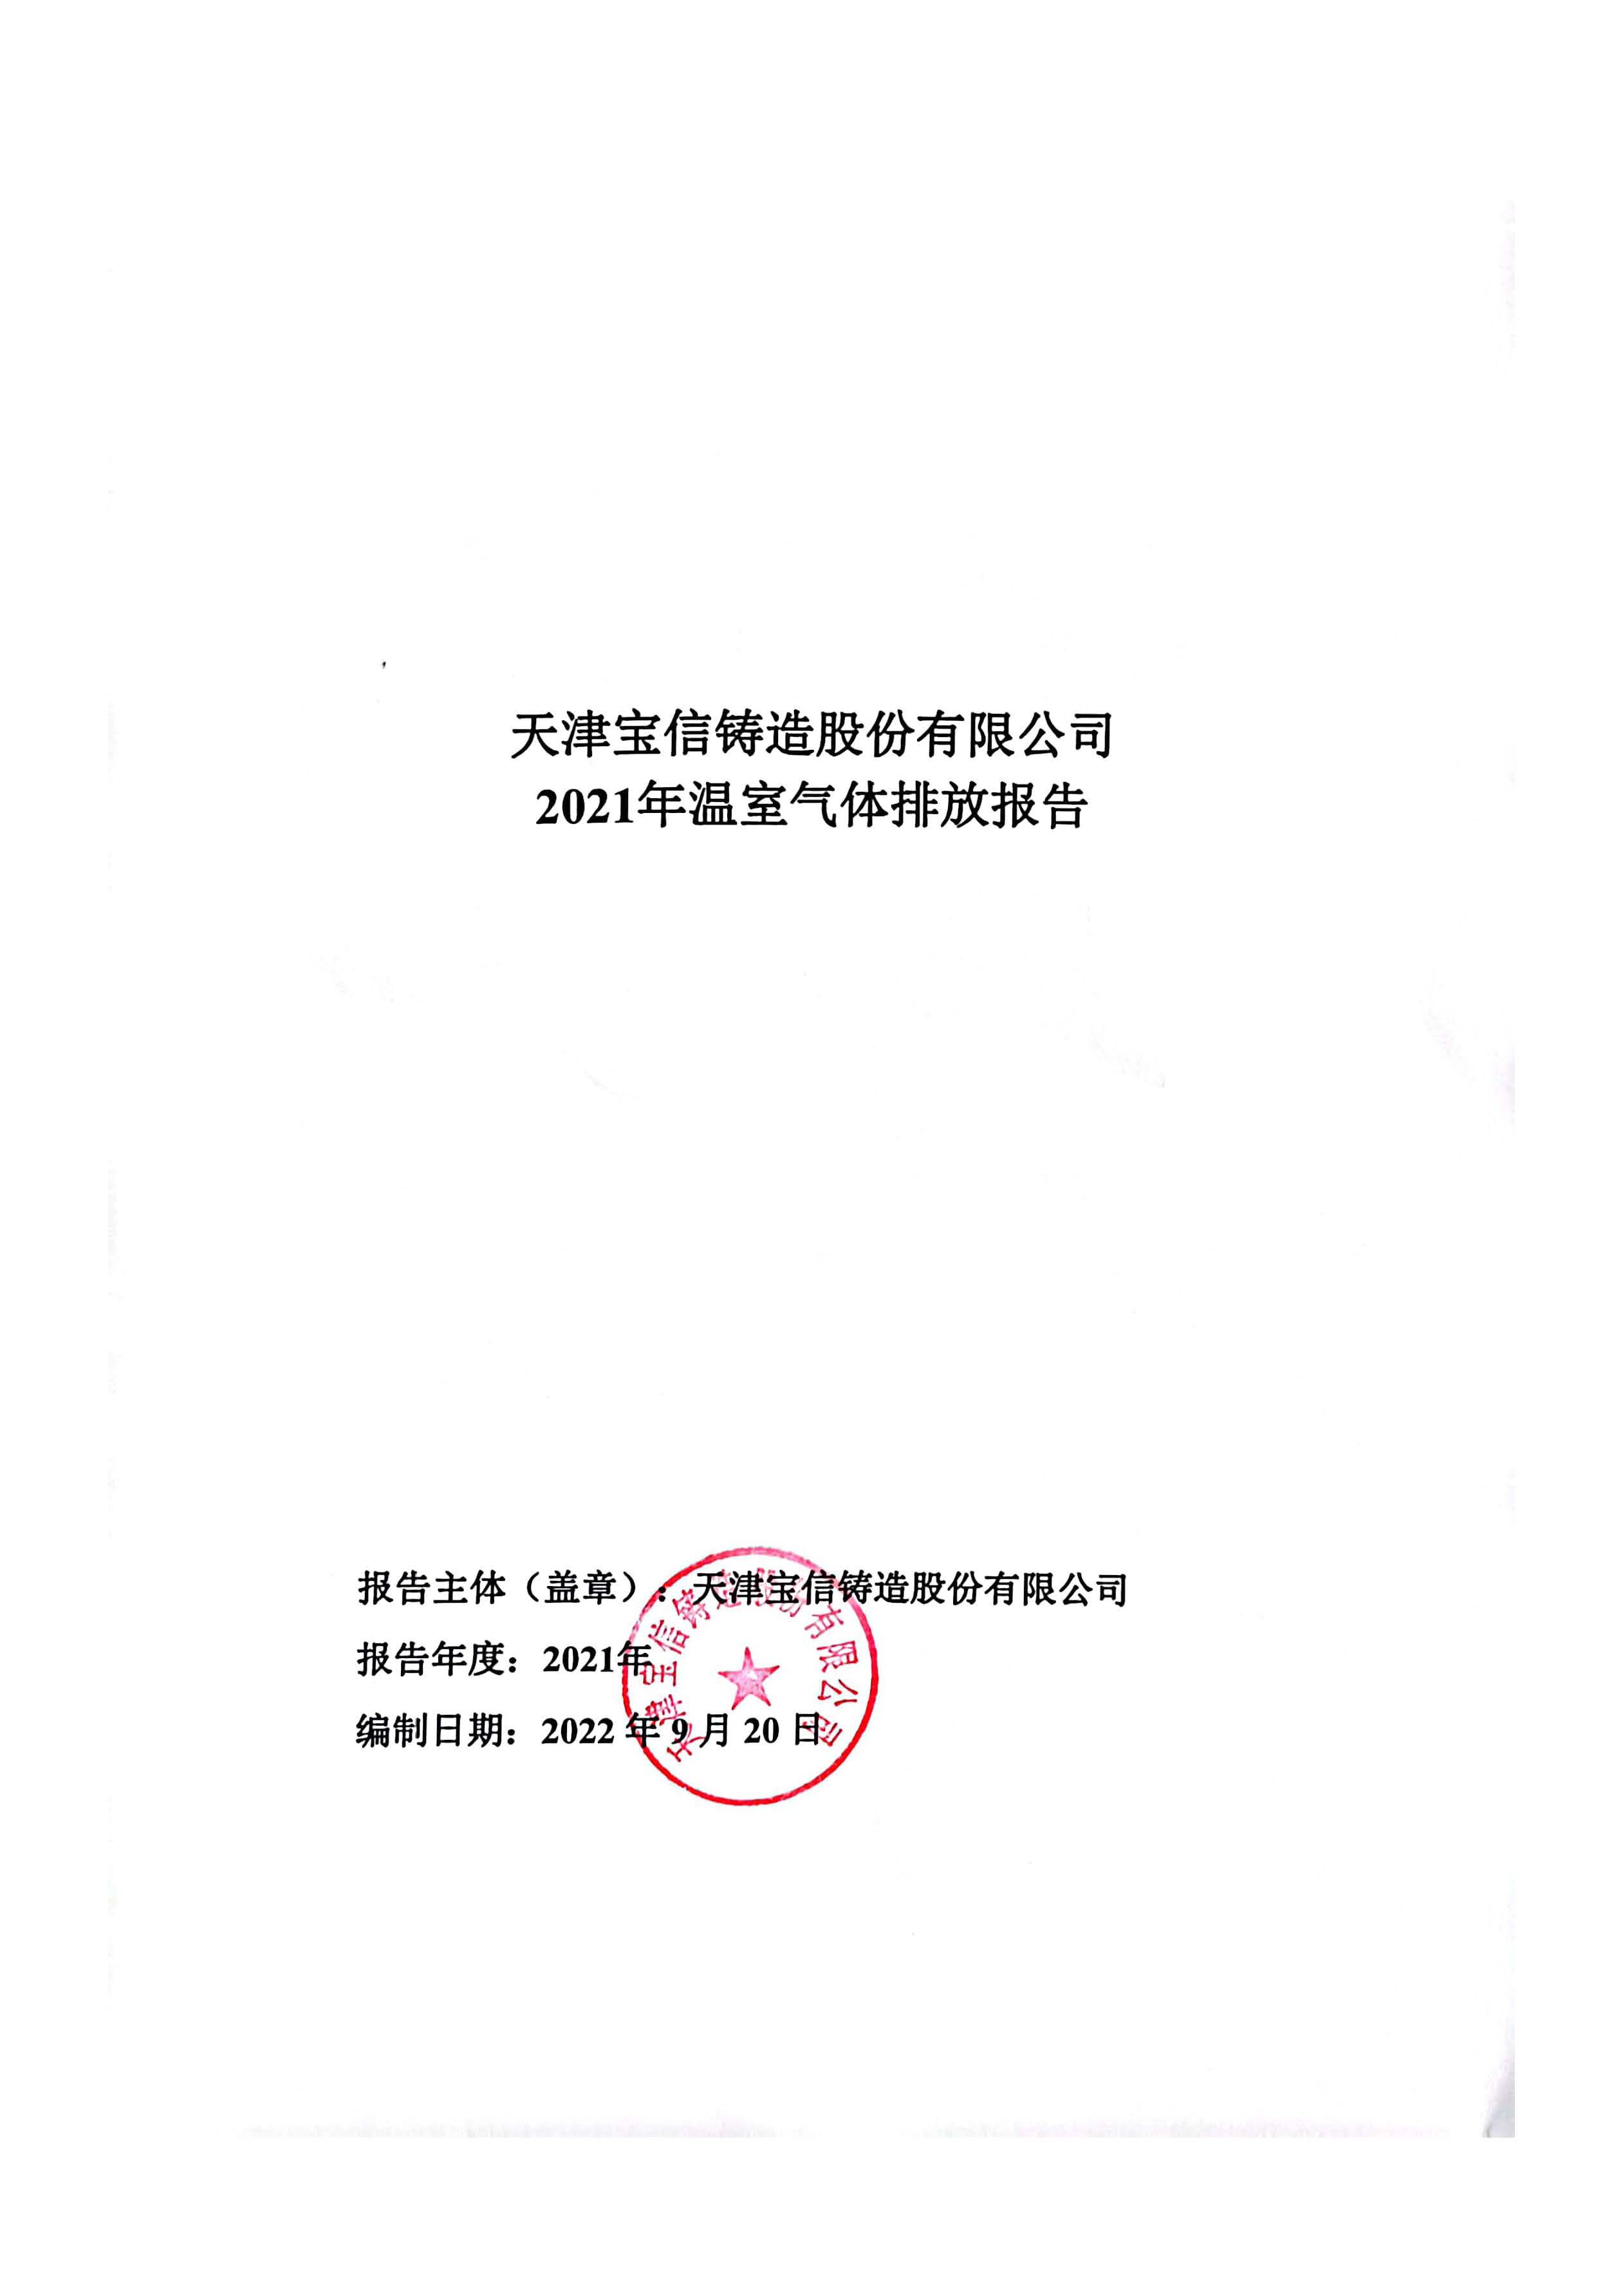 天津宝信铸造股份有限公司2021年温室气体排放报告公示